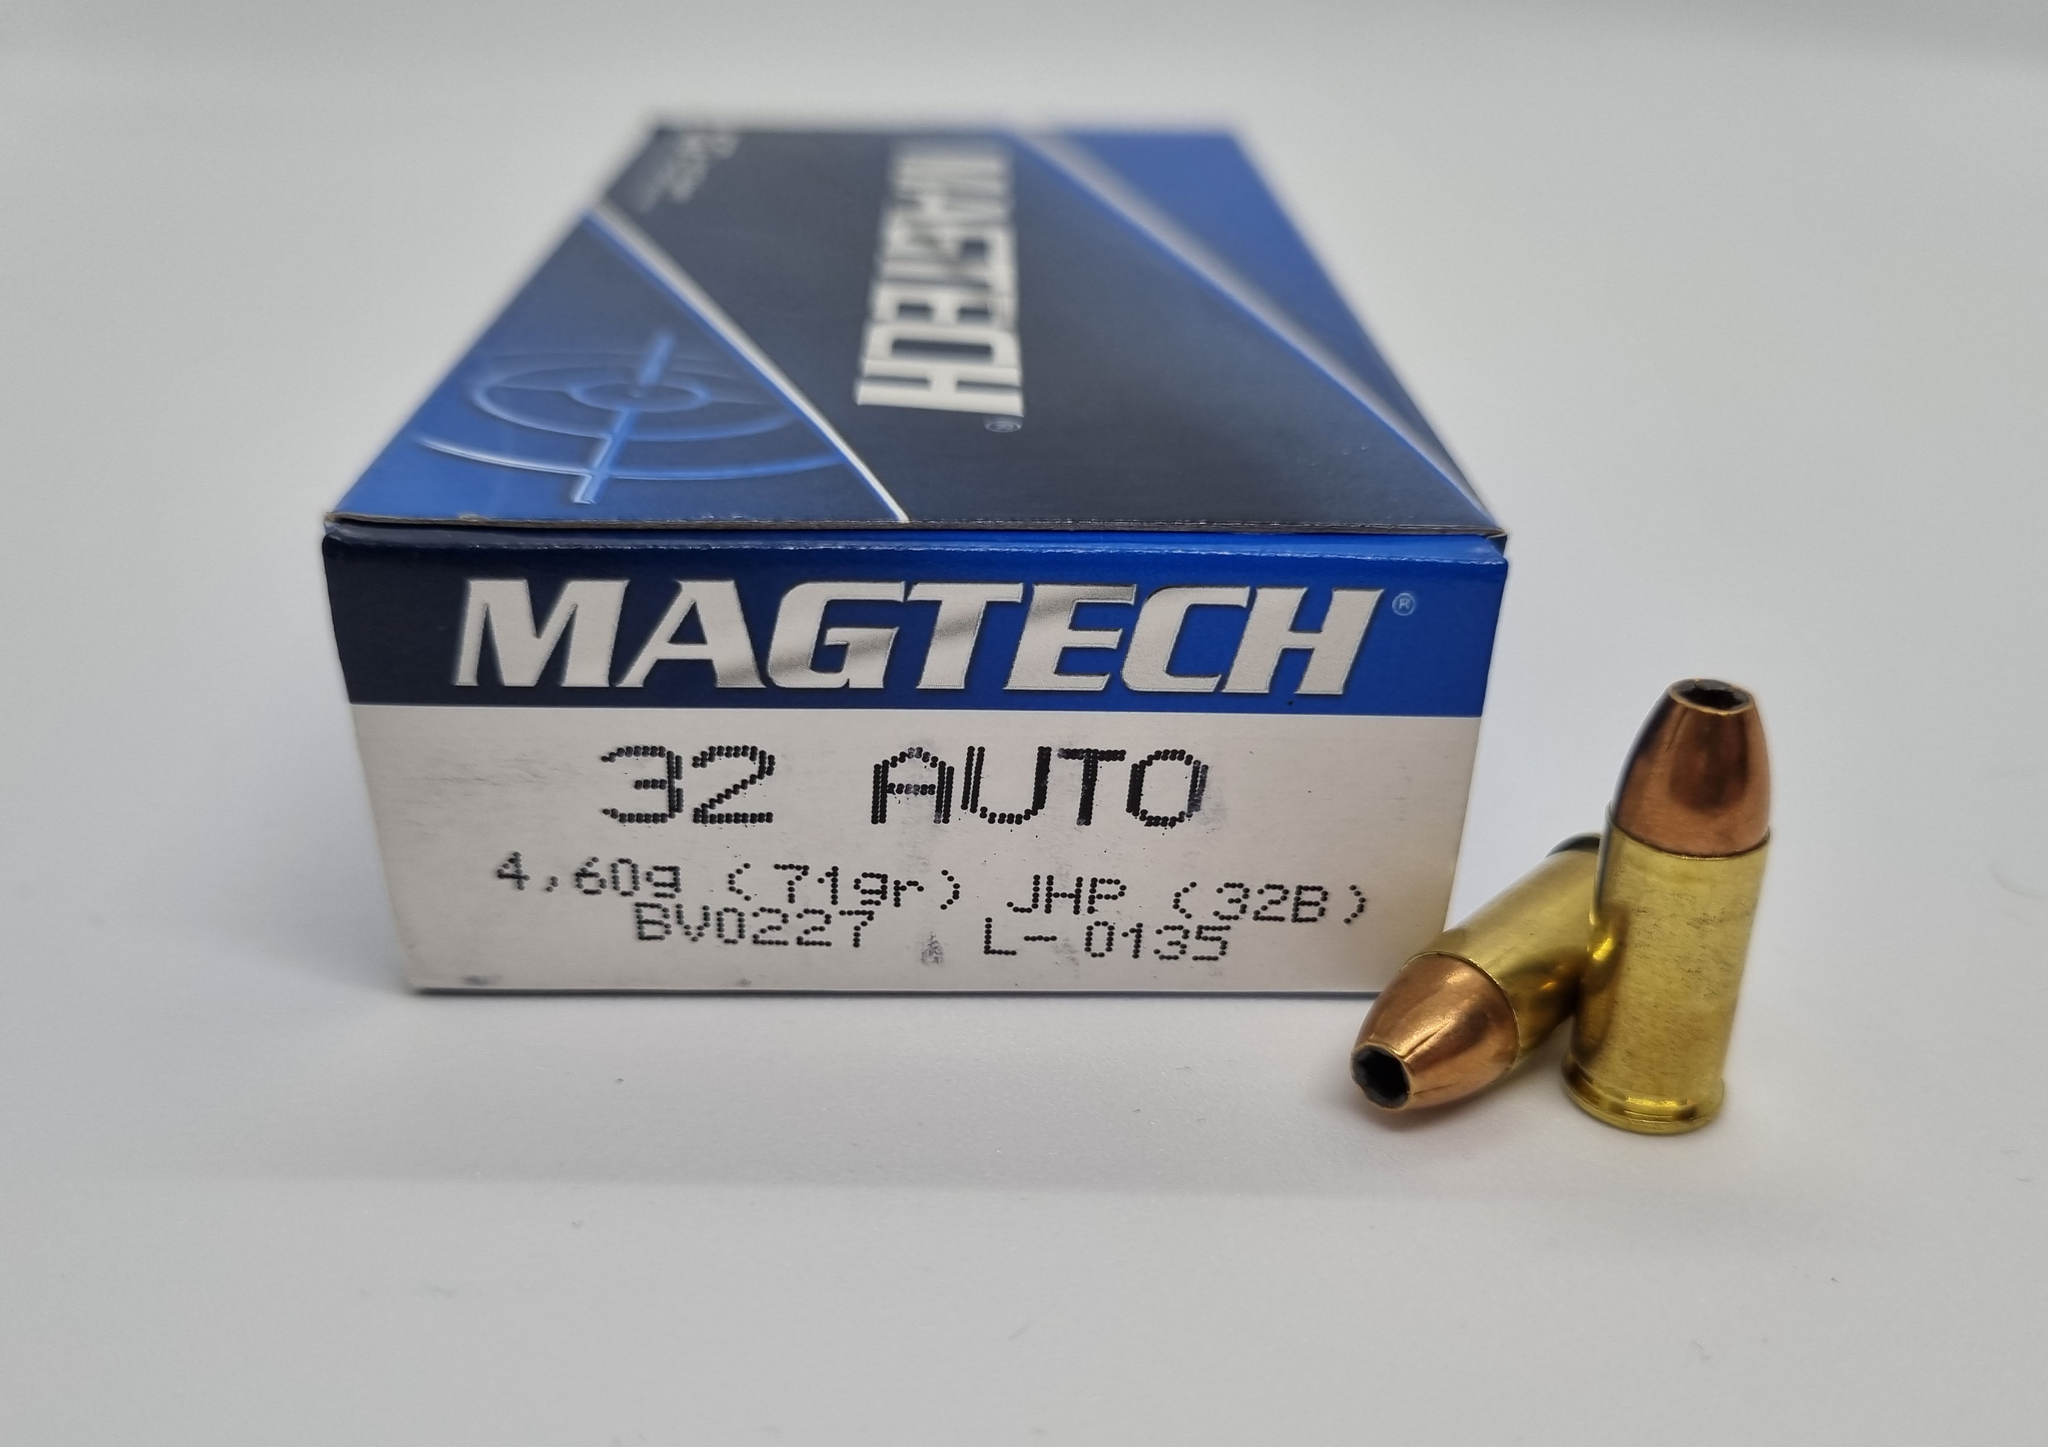 Magtech .32 Auto 71gr JHP (32B)